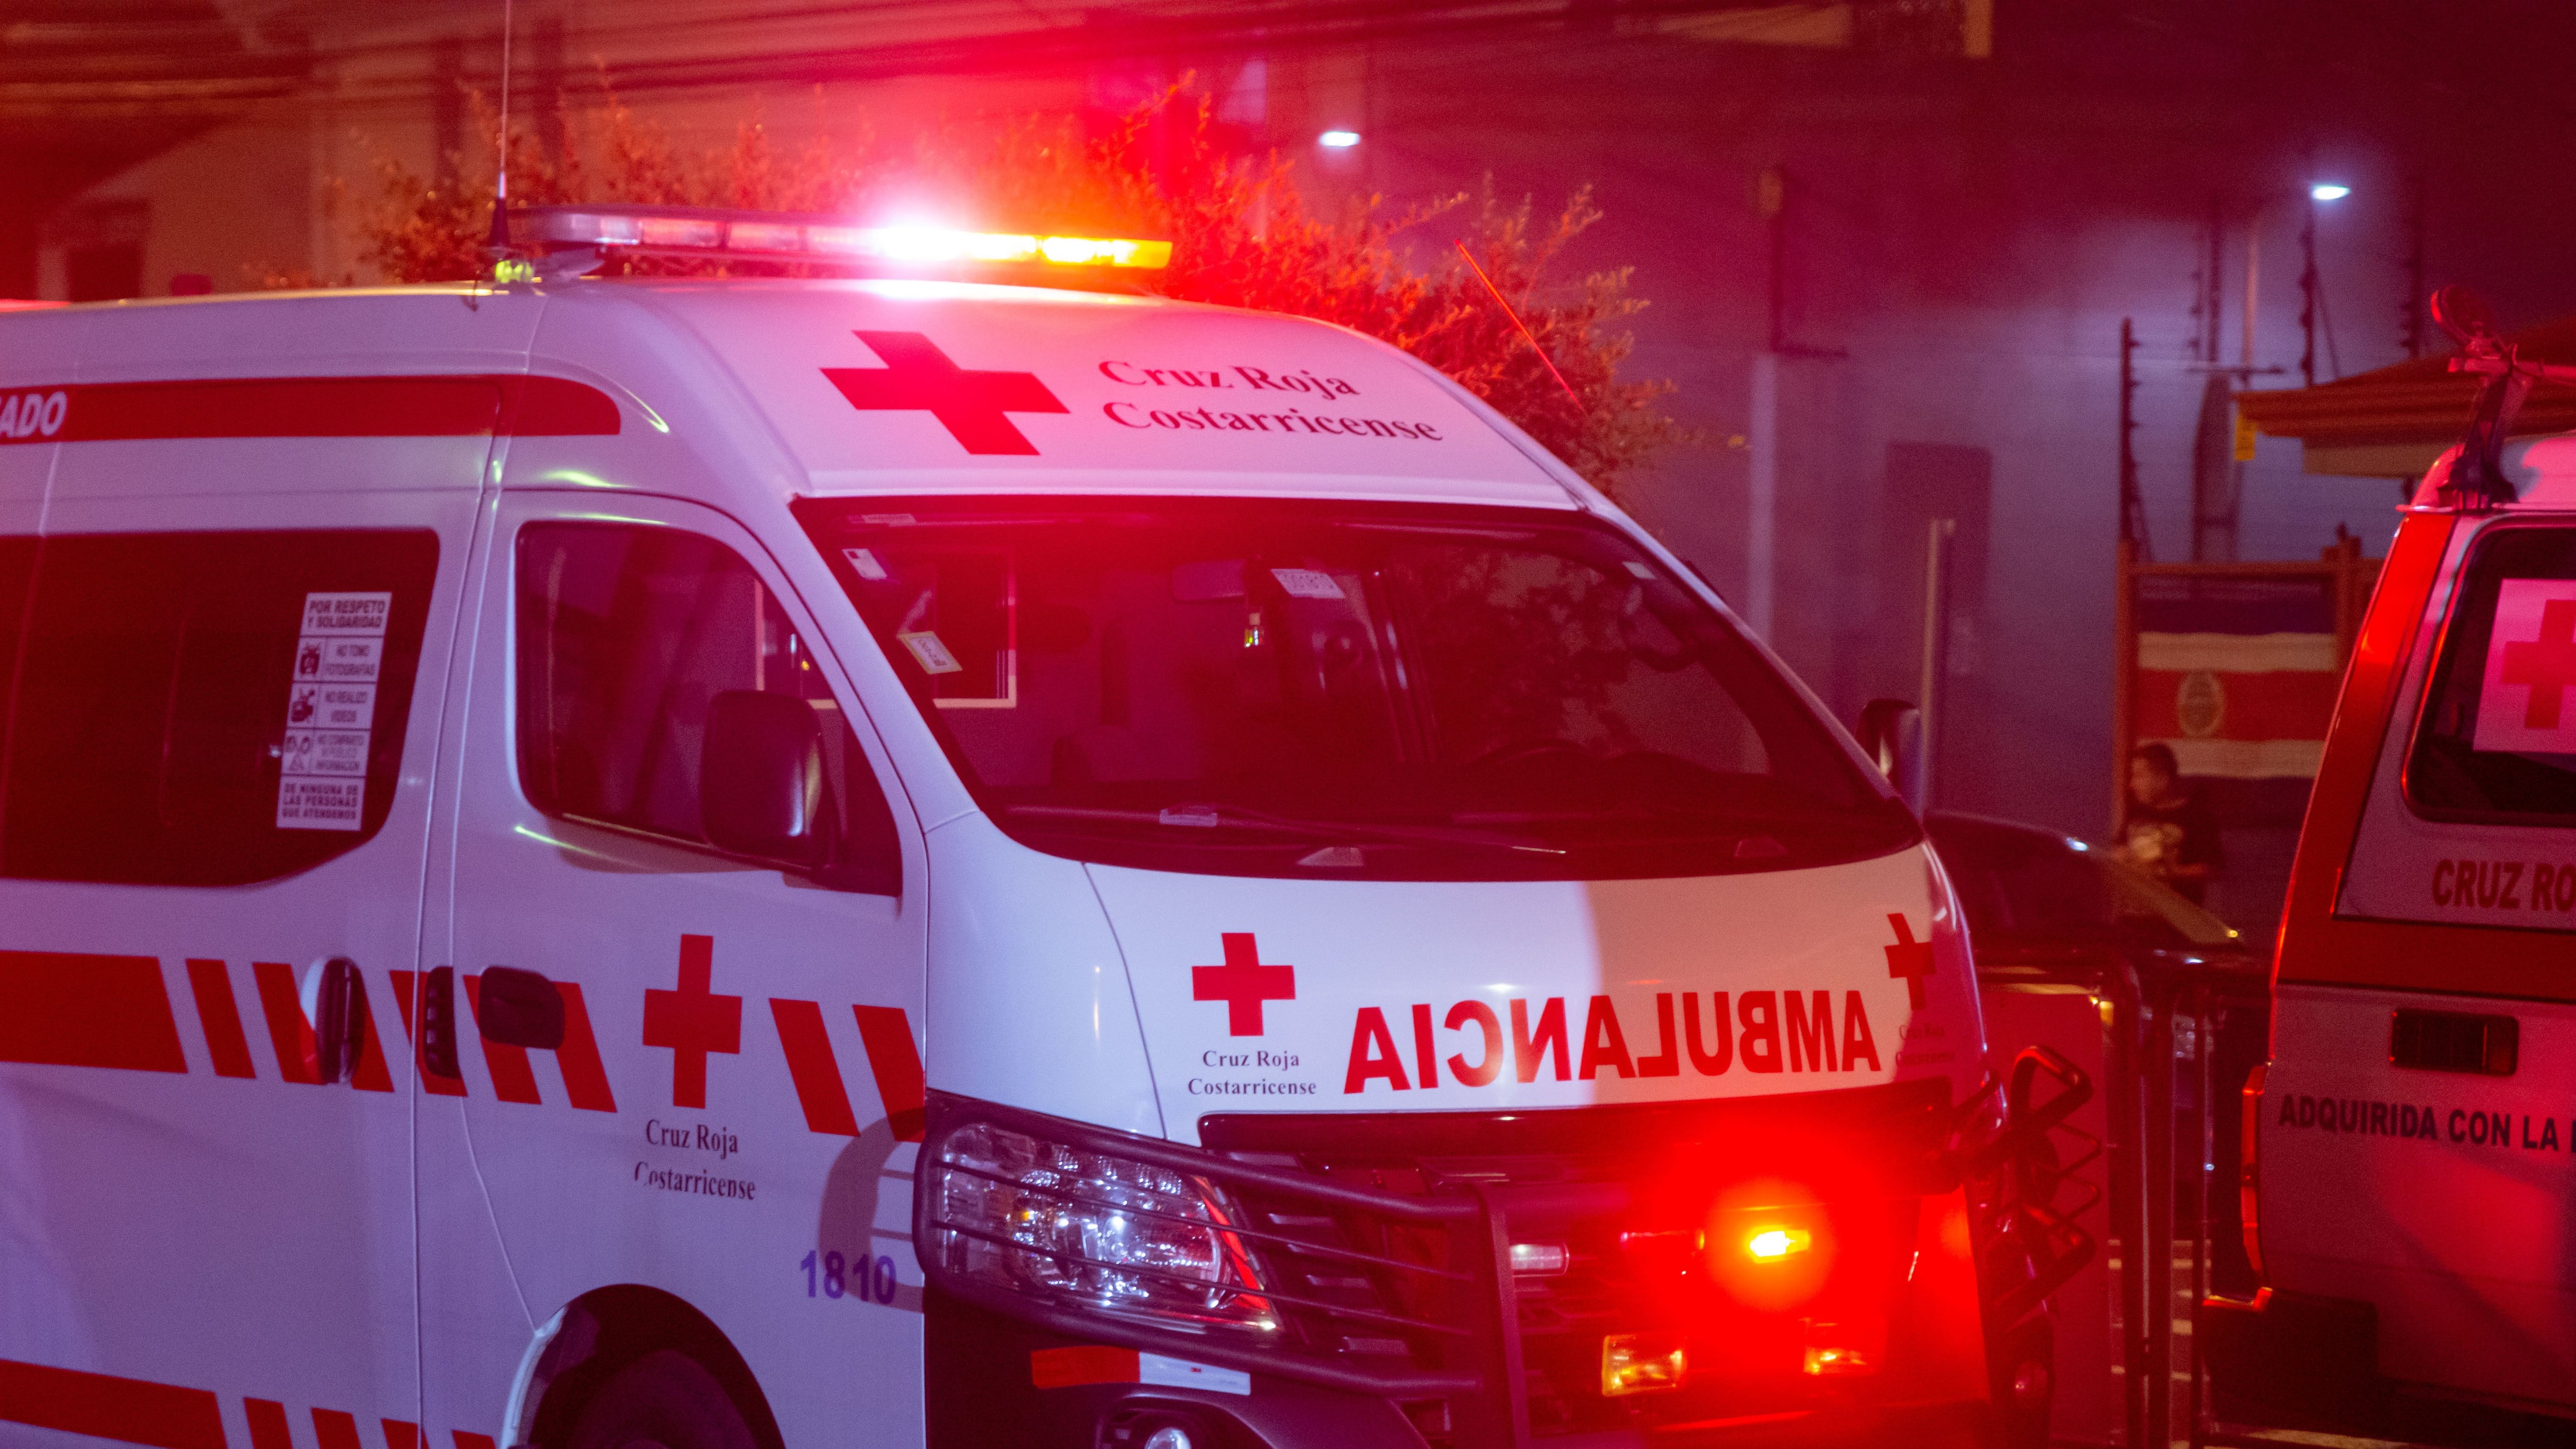 Cruz Roja traslada a siete personas a un albergue debido a un deslizamiento en Santa Ana